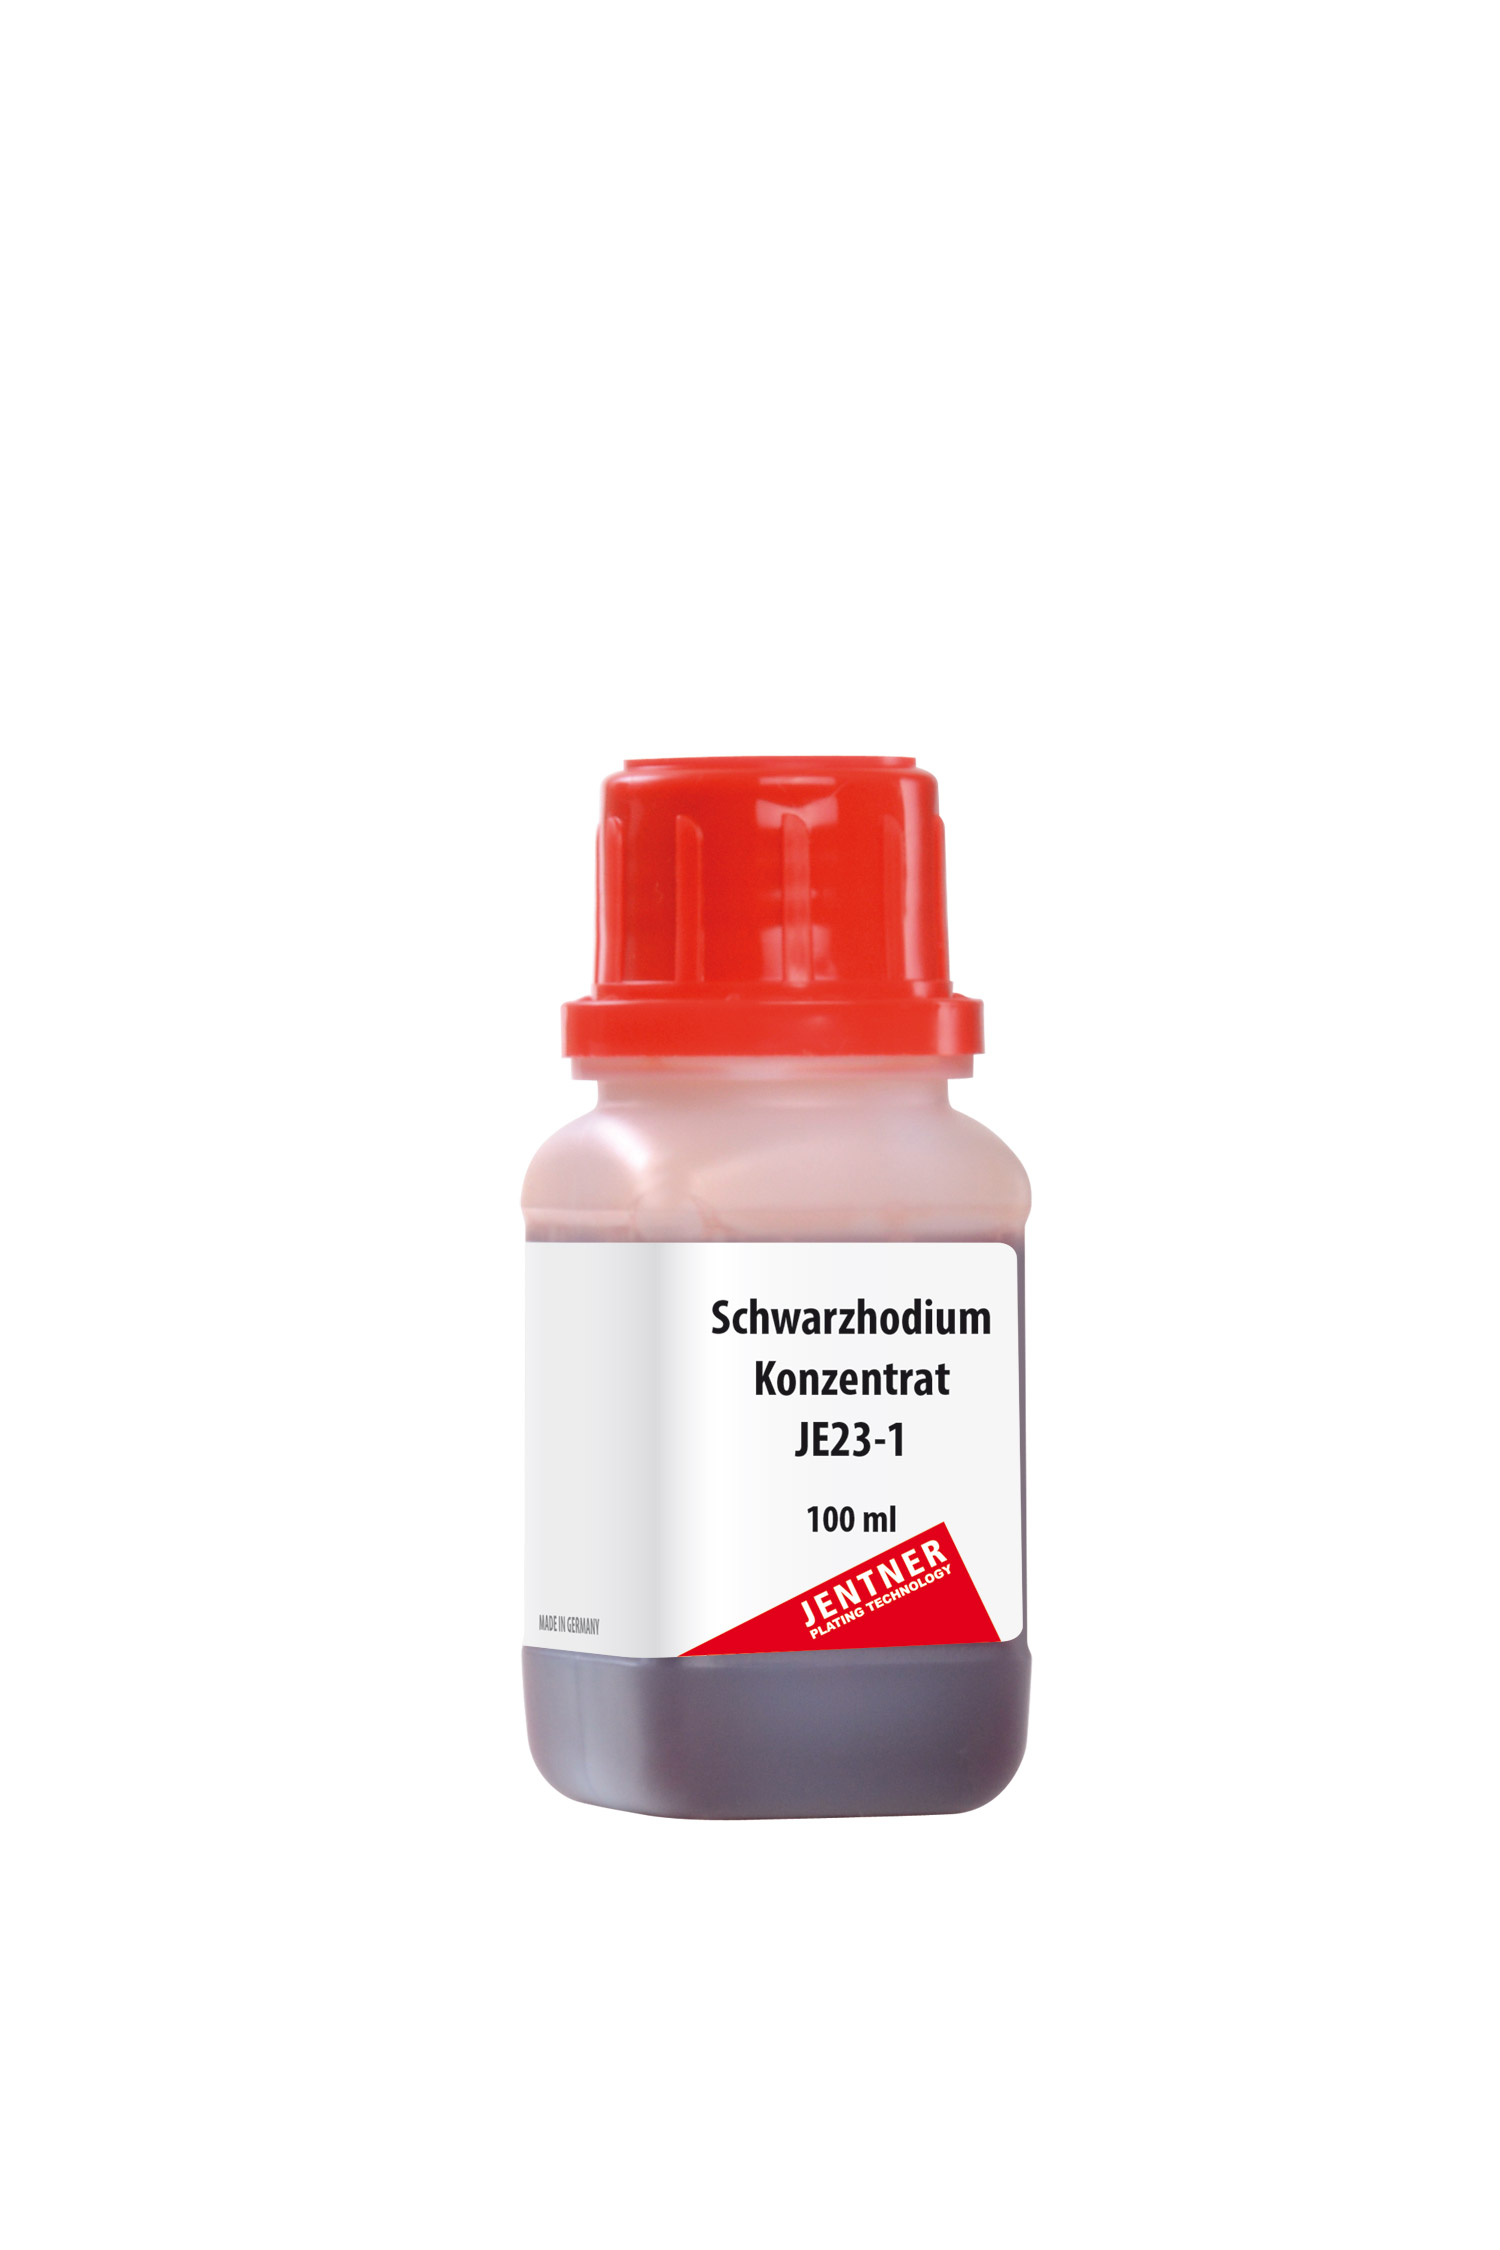 Schwarzrhodium-Konzentrat JE23-1 - 2g Rh (100 ml)